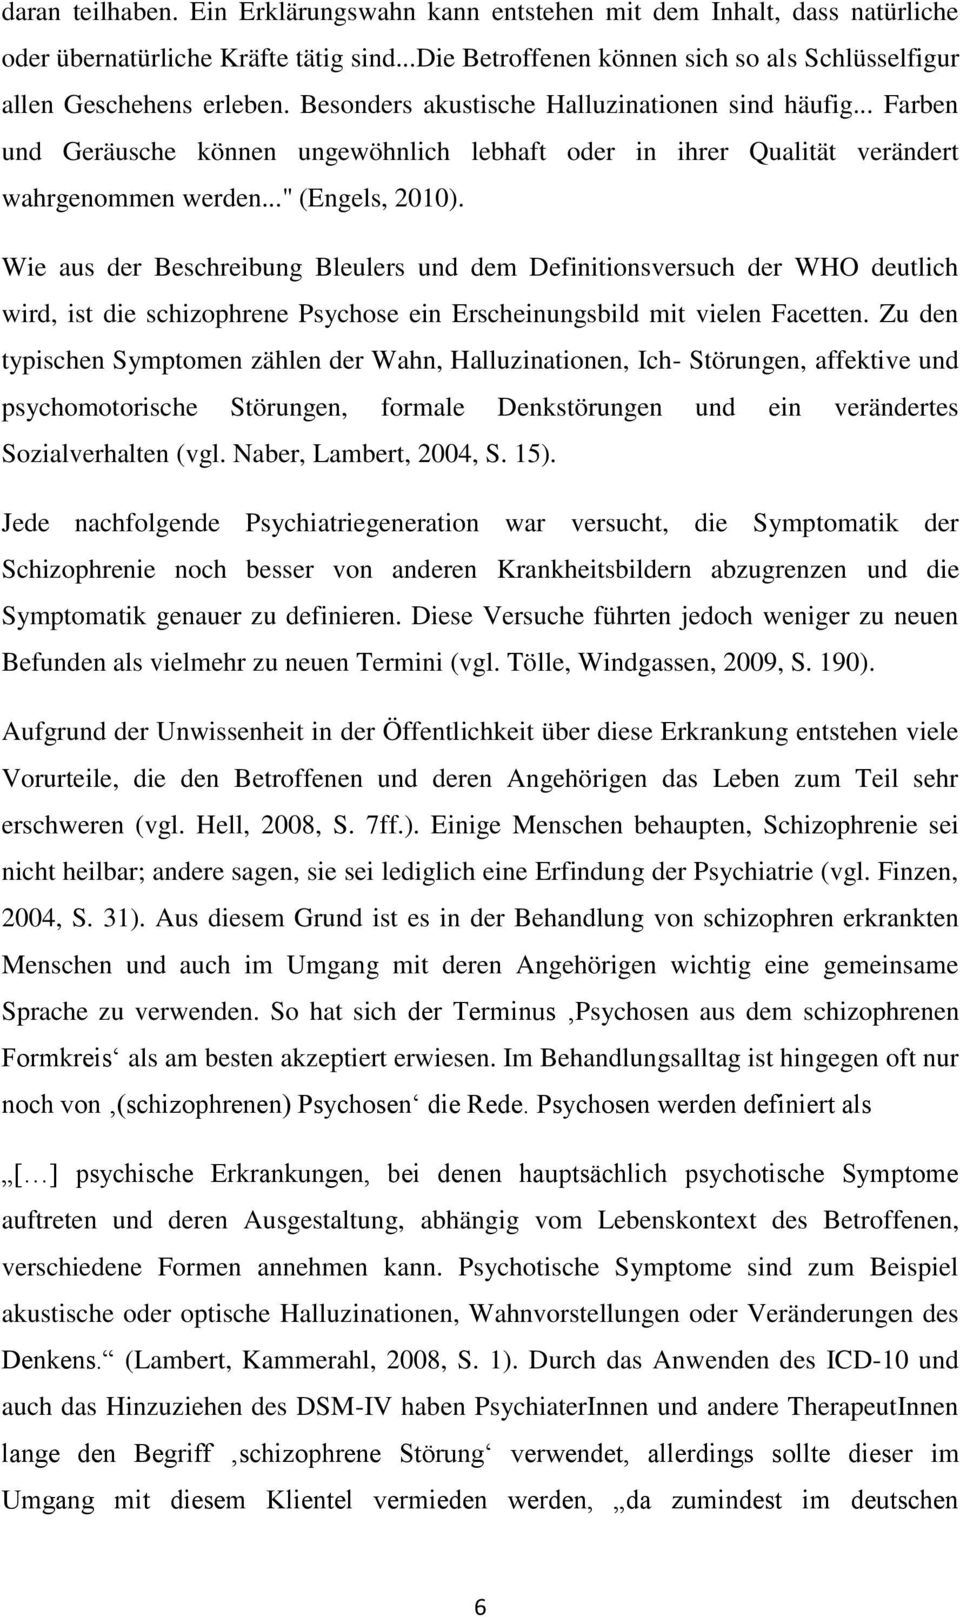 Wie aus der Beschreibung Bleulers und dem Definitionsversuch der WHO deutlich wird, ist die schizophrene Psychose ein Erscheinungsbild mit vielen Facetten.